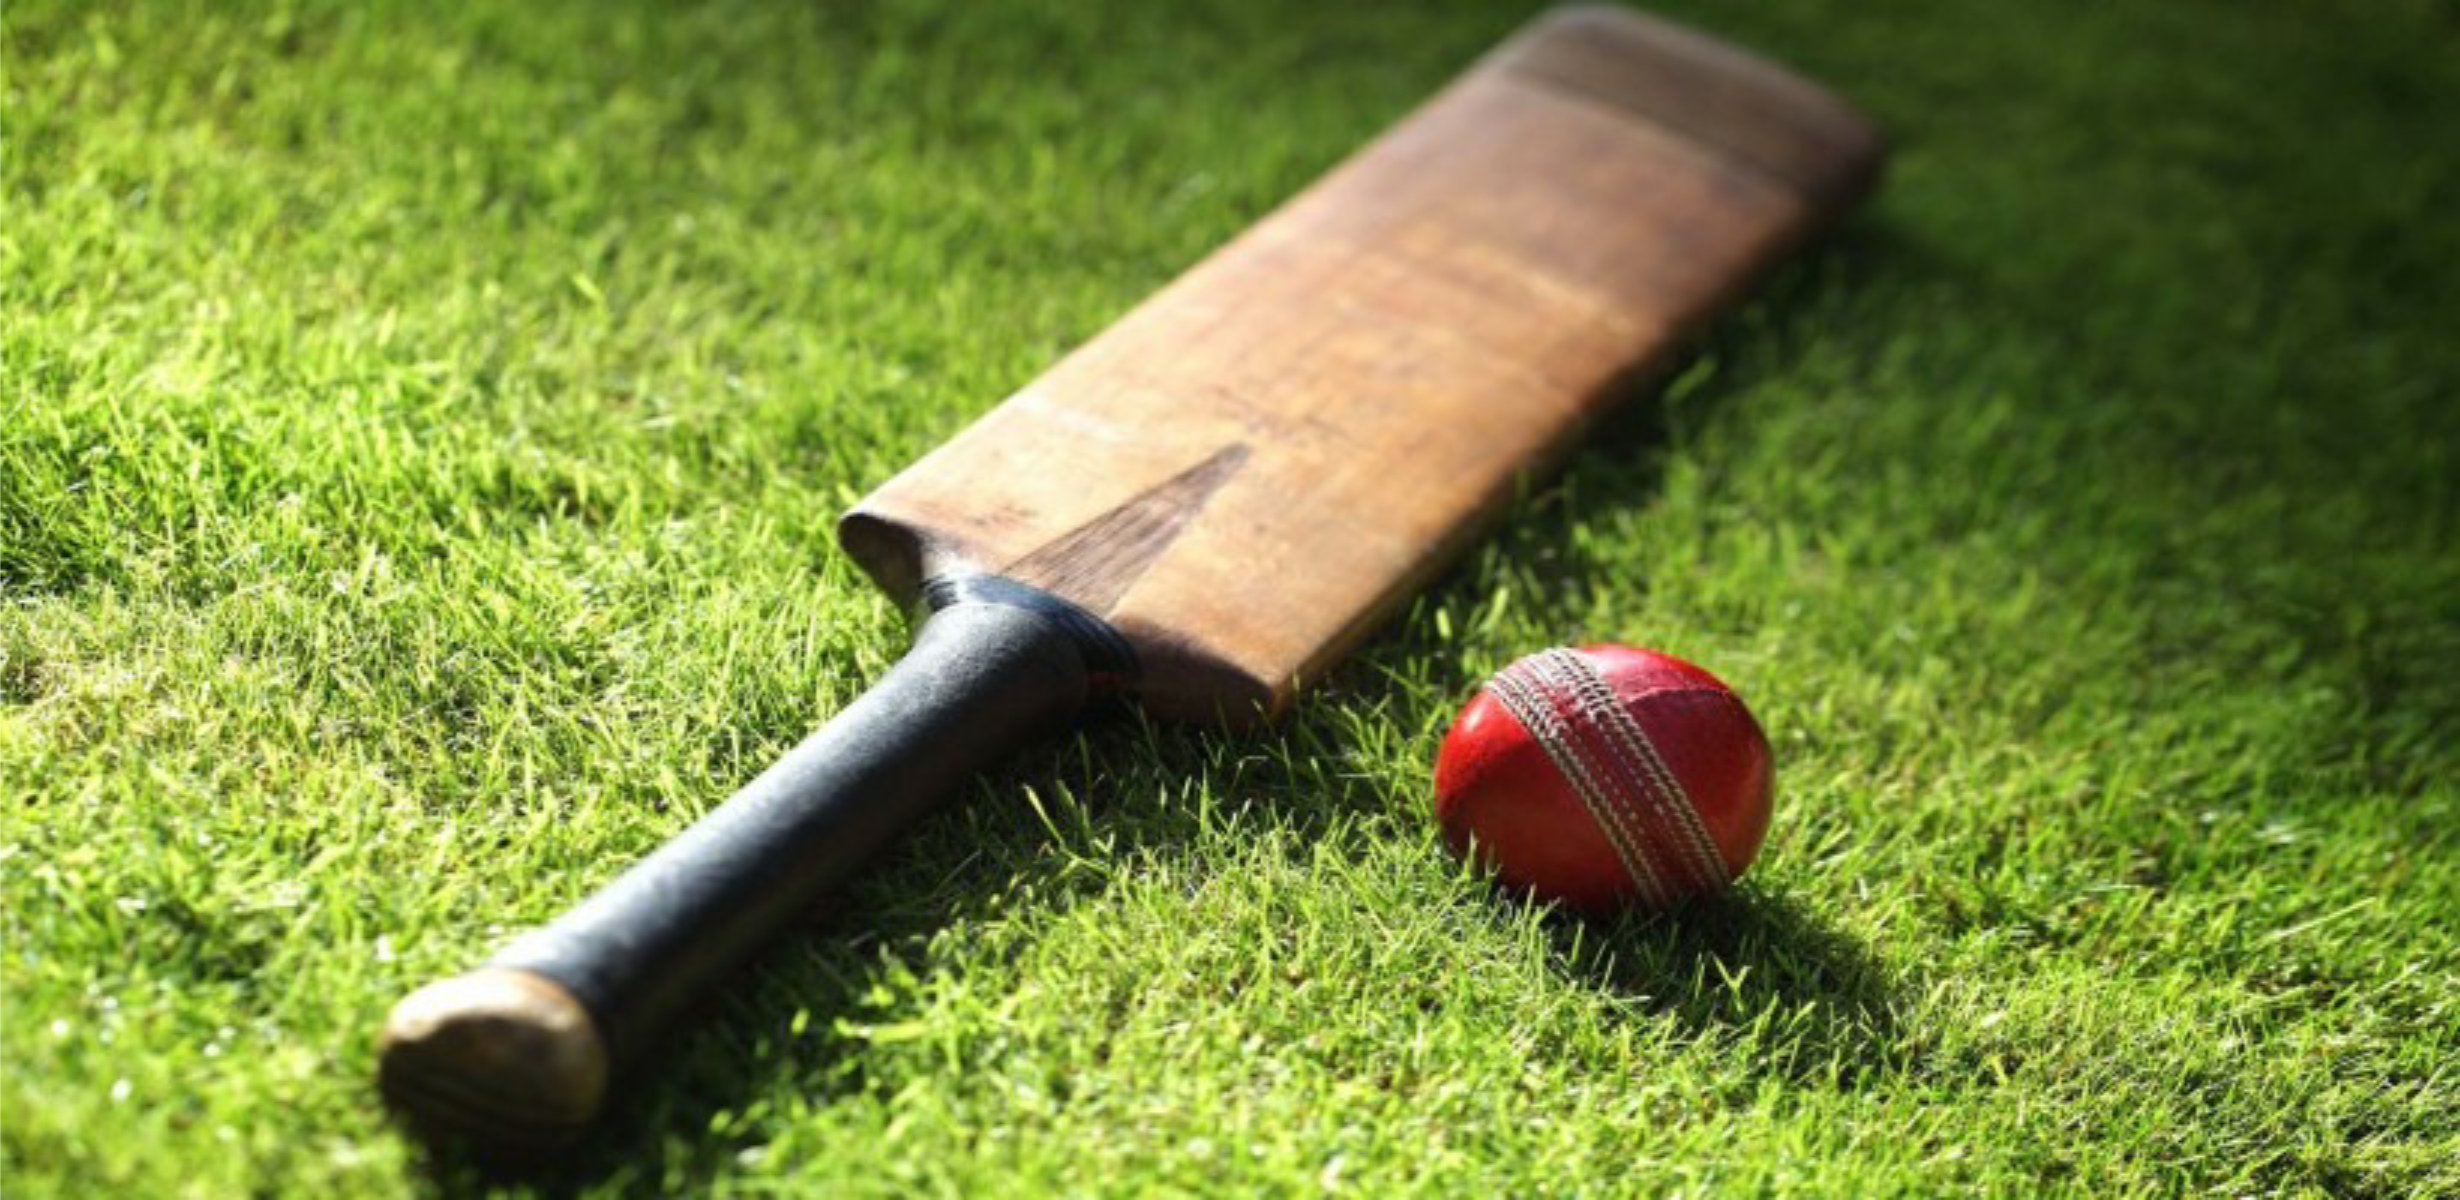 Cricket Bat And Ball Hd Wallpaper Download - Cricket Bat And Ball Hd ...